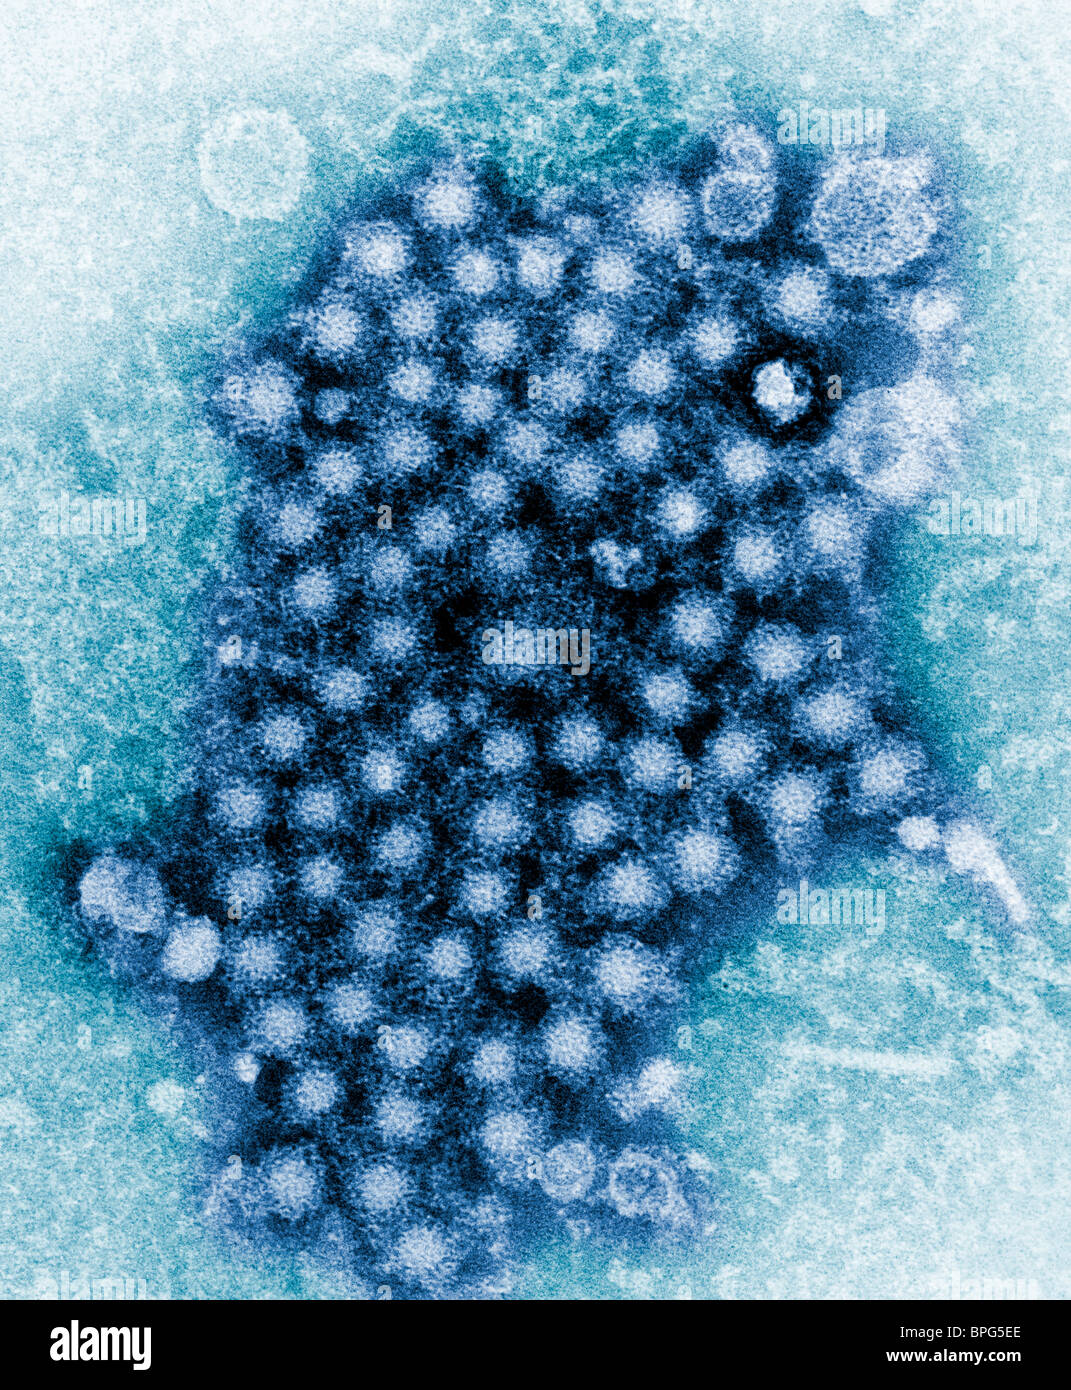 Una micrografia elettronica a trasmissione (TEM) che mostra numerosi virioni di epatite, di un ceppo sconosciuto. Foto Stock